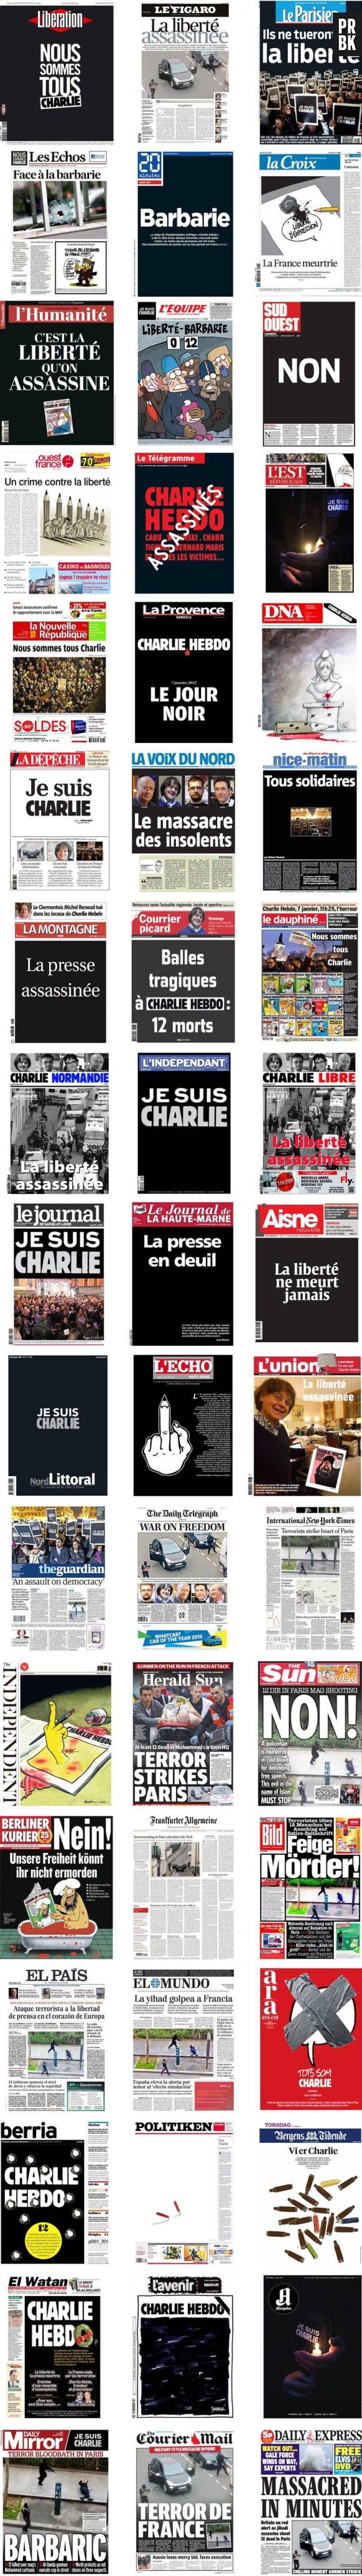 Charlie Hebdo : les Unes des quotidiens français et internationaux du 8 janvier 2015 rendent hommage aux journalistes et policiers tués dans l'attentat de Charlie Hebdo